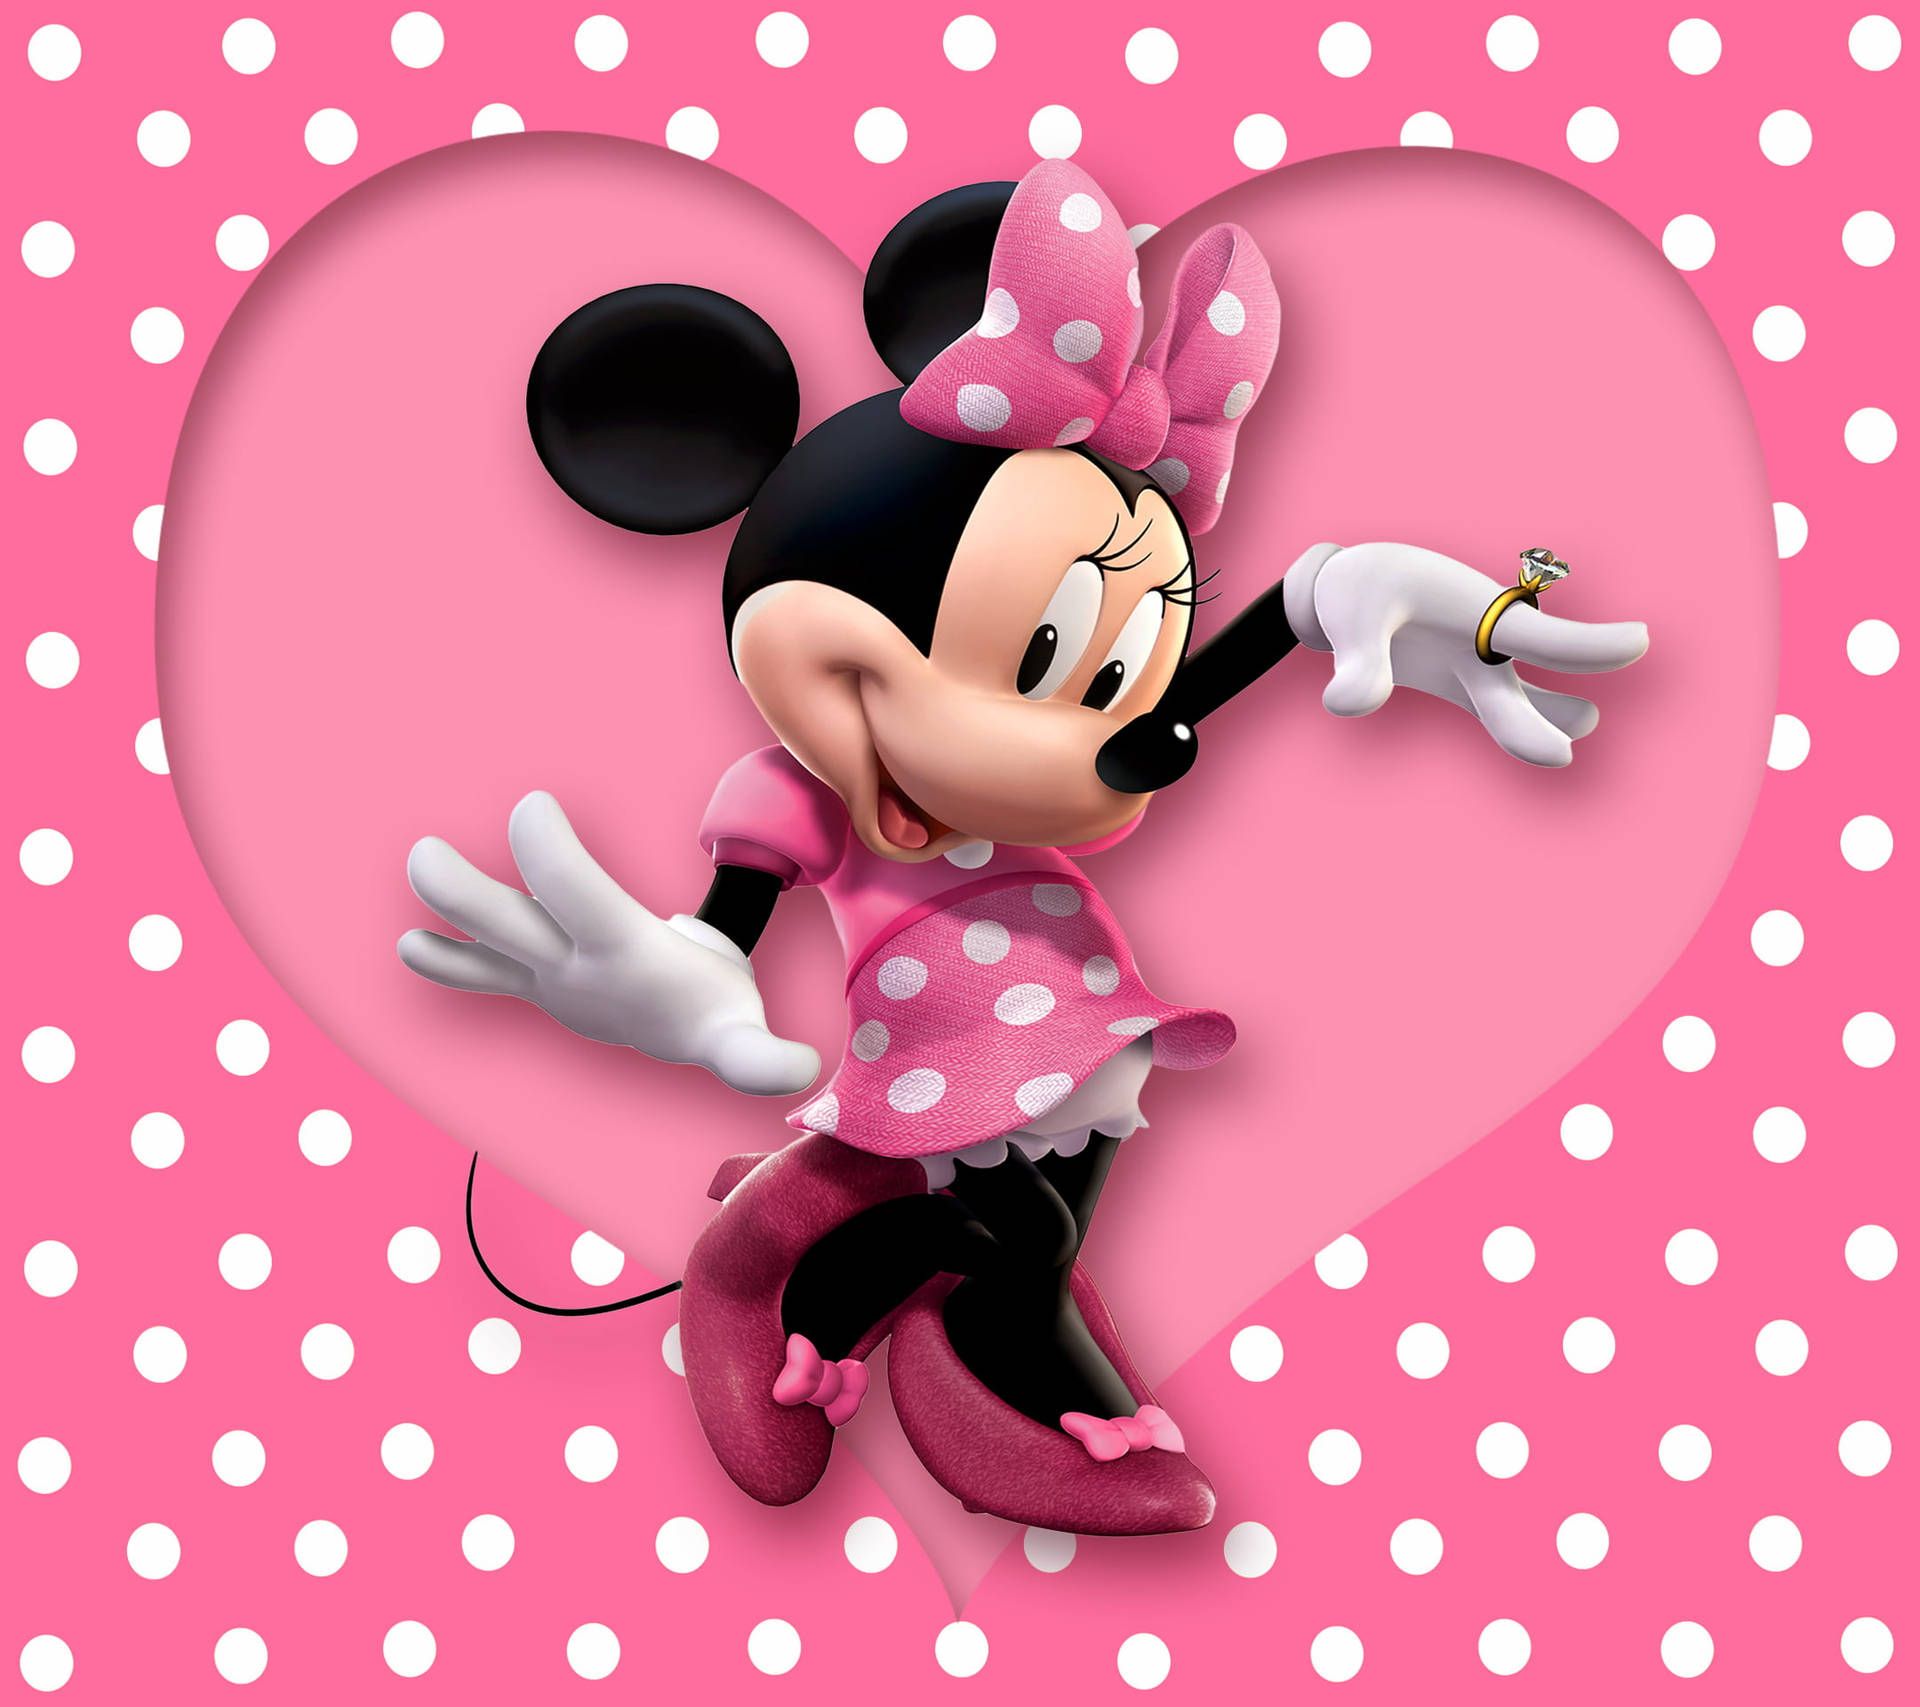 Papelde Parede De Pink Heart Da Minnie Mouse. Papel de Parede